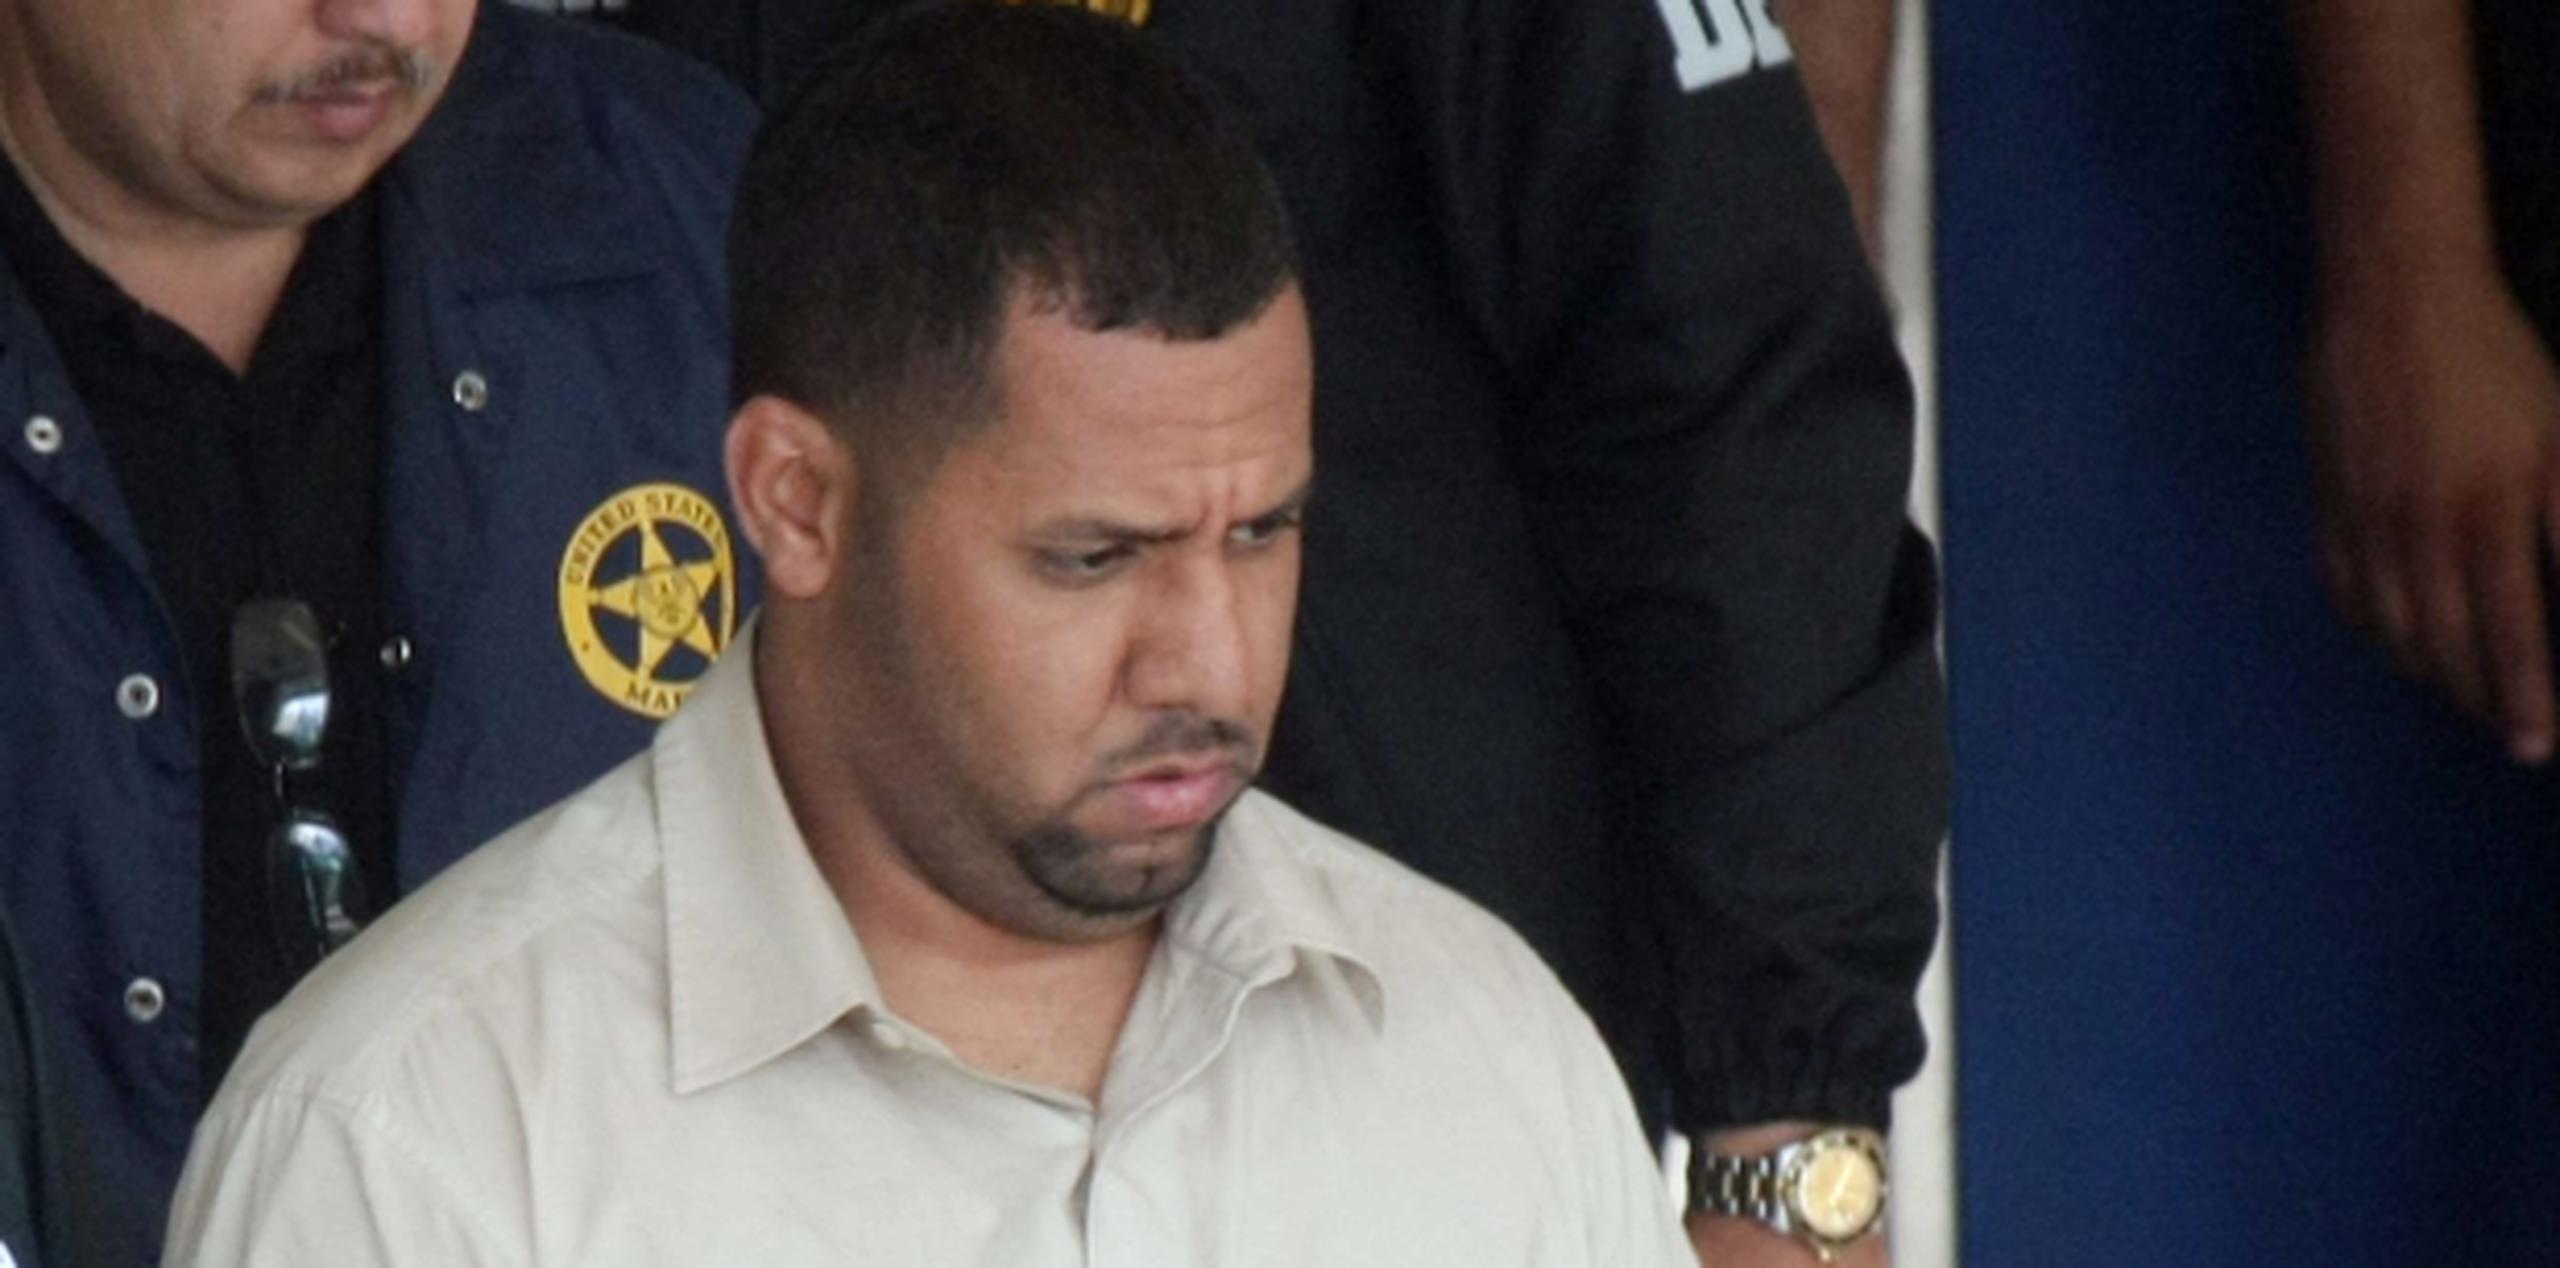 Ayala Vázquez fue sentenciado a cárcel de por vida en octubre de 2011 tras ser encontrado culpable por un jurado en abril del mismo año por ser un narcotraficante en la zona de Bayamón. (Archivo)